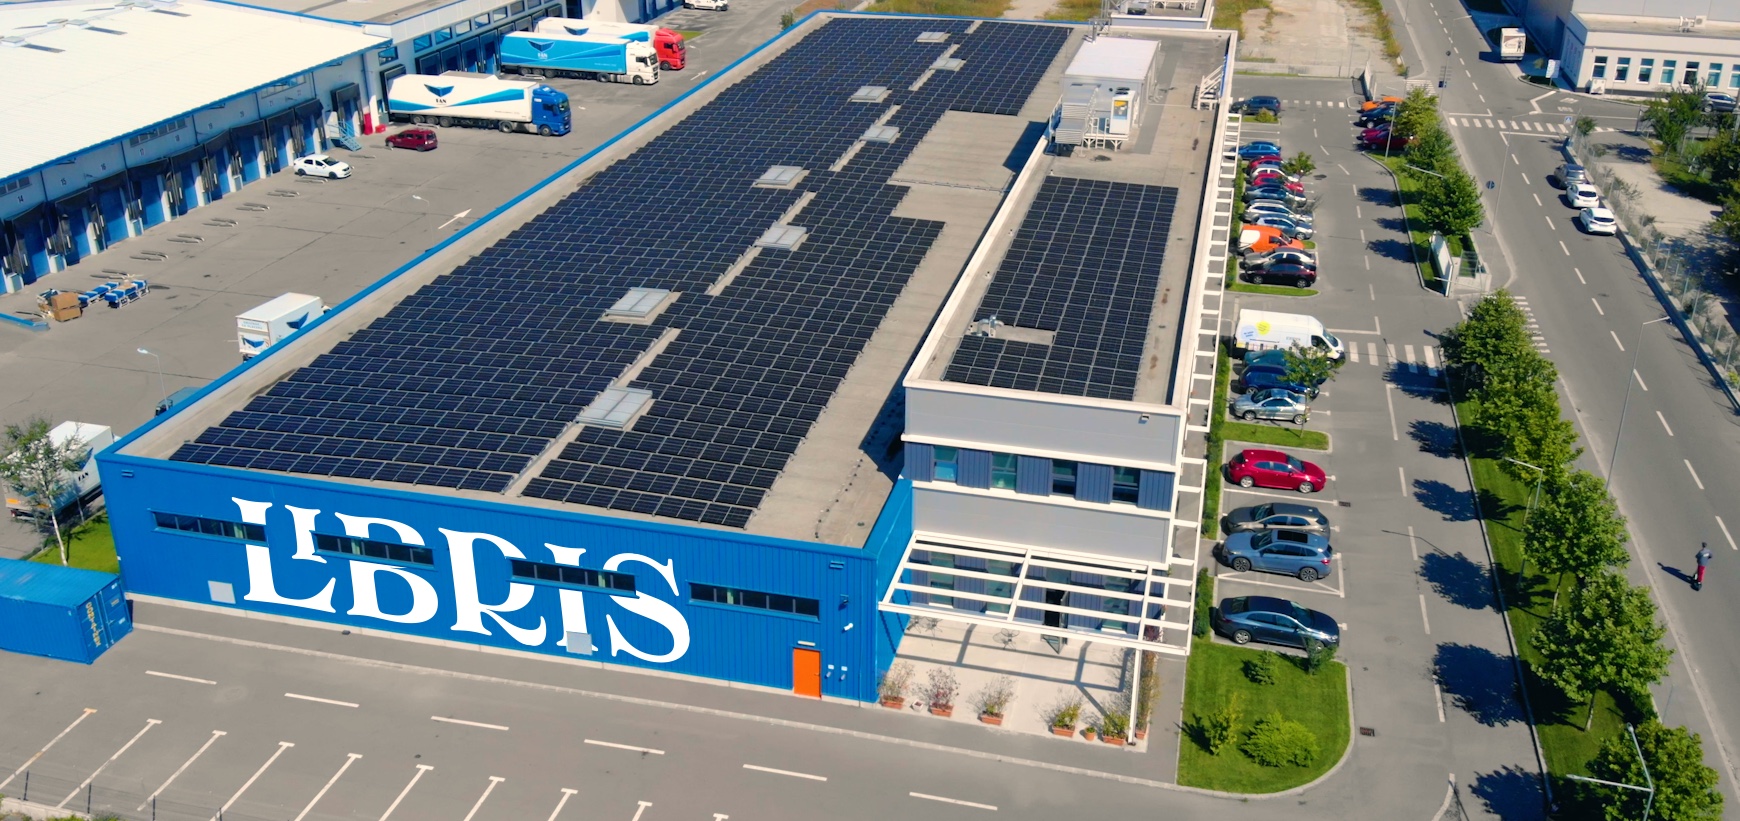 Depozitul verde: Libris investește 300.000 euro în panouri fotovoltaice și devine independentă energetic